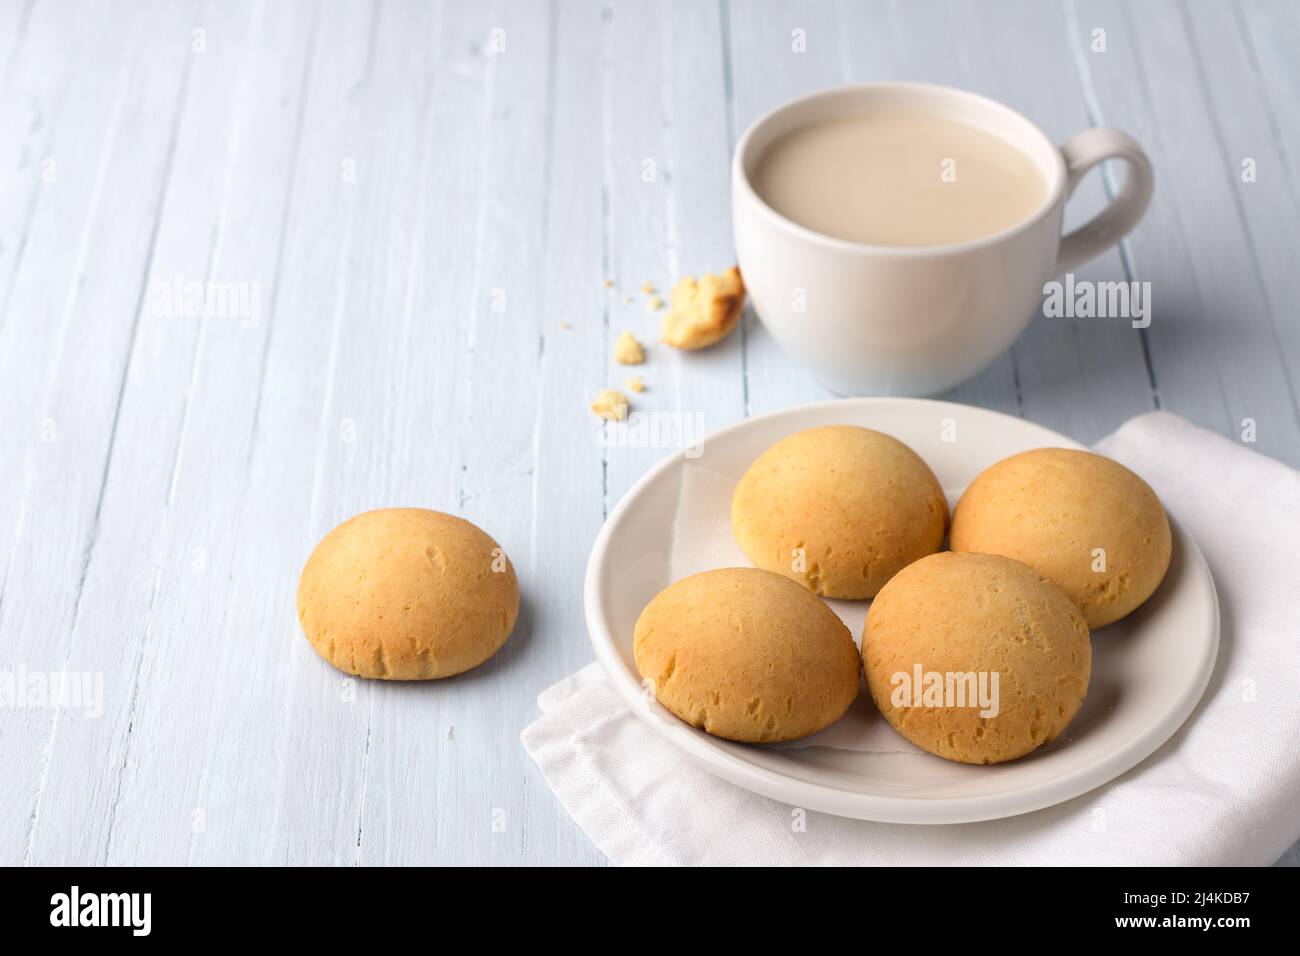 Biscotti fatti in casa senza glutine al riso casereccio e una tazza di tè con latte su sfondo chiaro Foto Stock